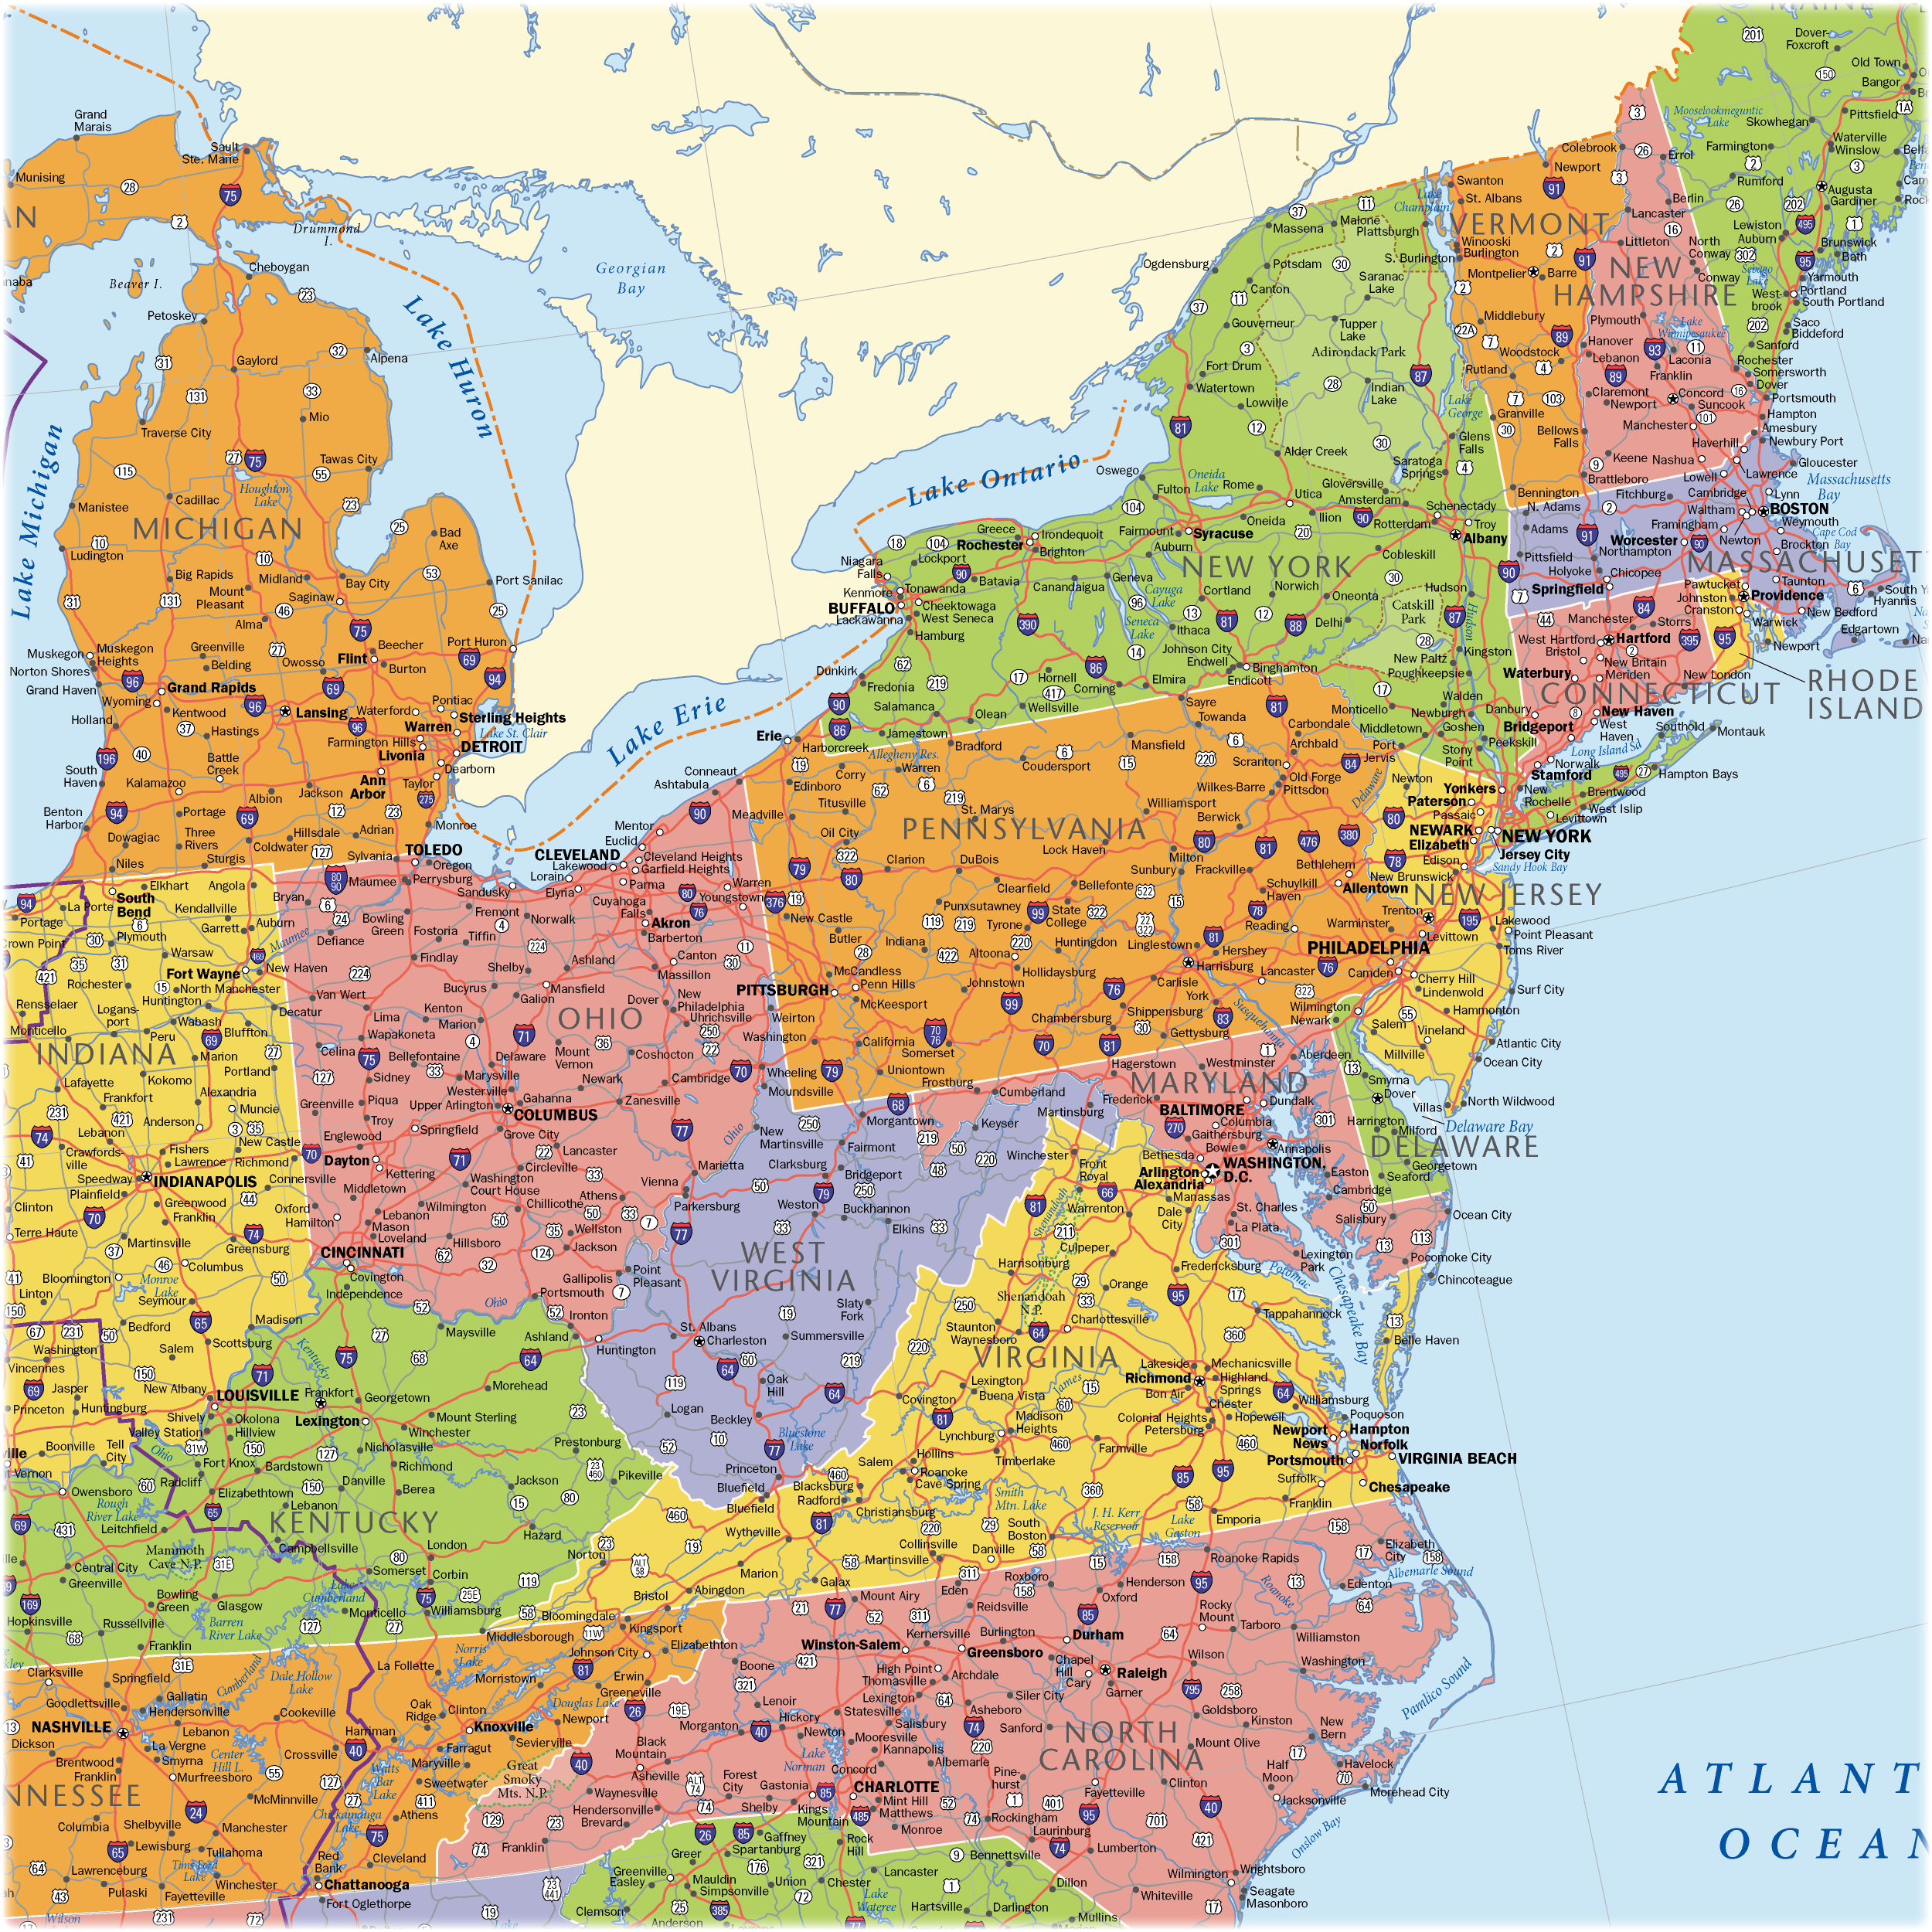 USA Region EastCoast previewDetail East Coast Usa Wall Maps East Coast